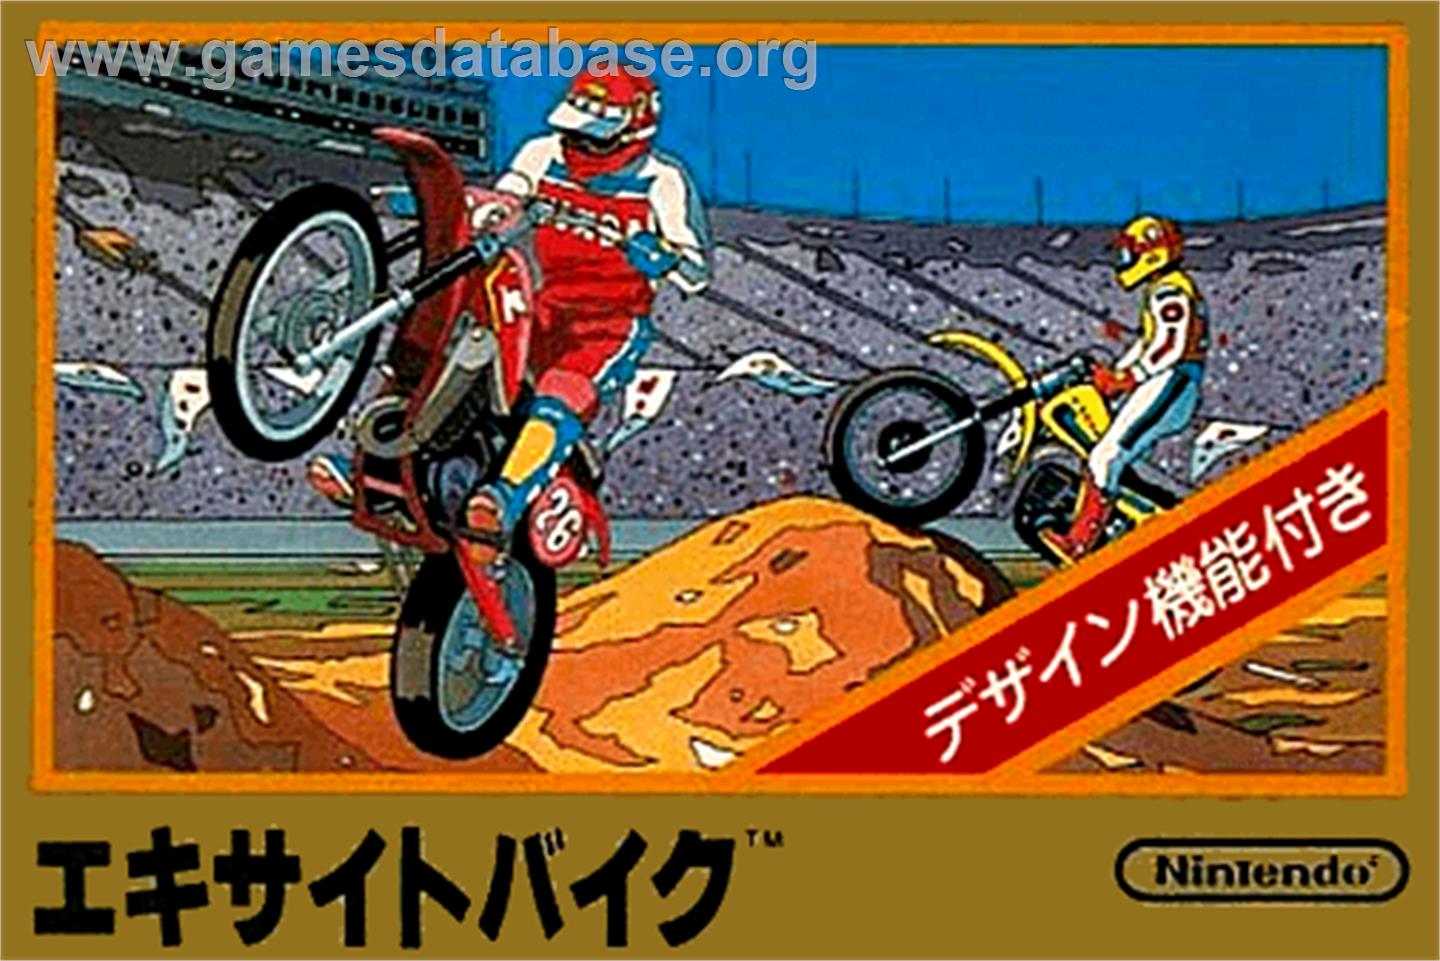 Excite Bike - Nintendo NES - Artwork - Box